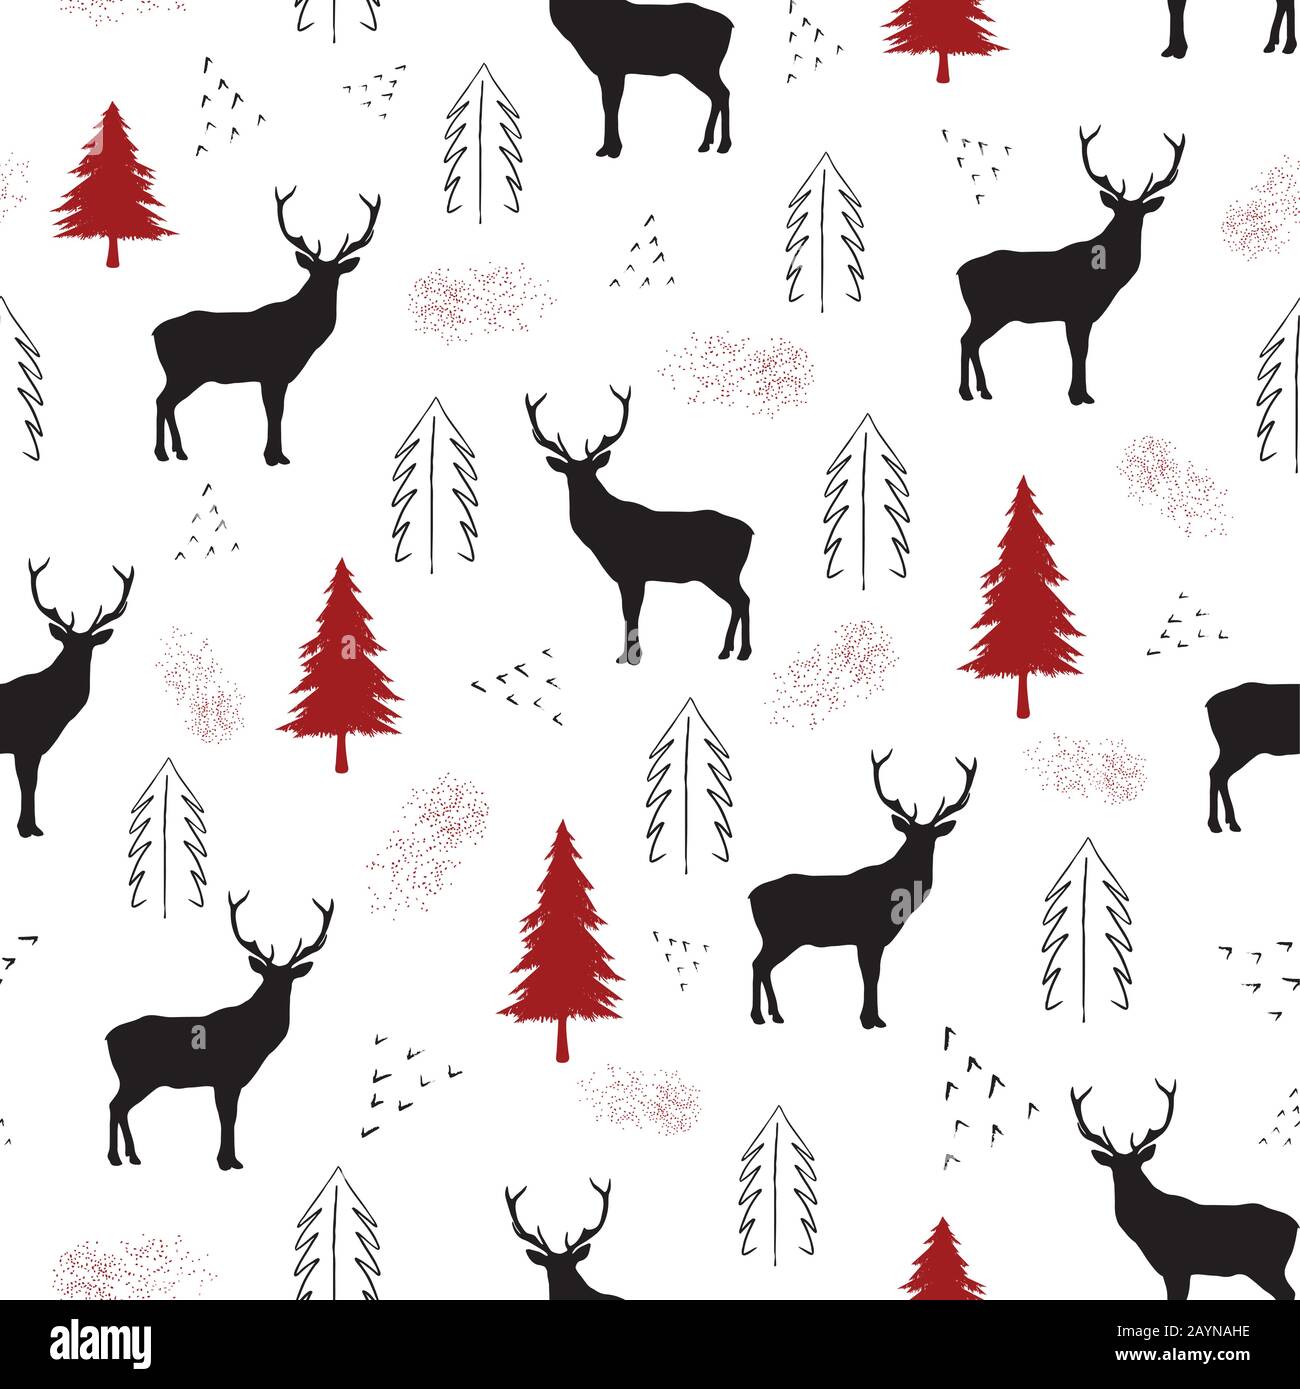 Cervi neri, puntini e alberi di natale rossi su sfondo bianco. Ripetizione perfetta del motivo natalizio per progetti di stampa, disegno tessile o carta. Vettore. Illustrazione Vettoriale